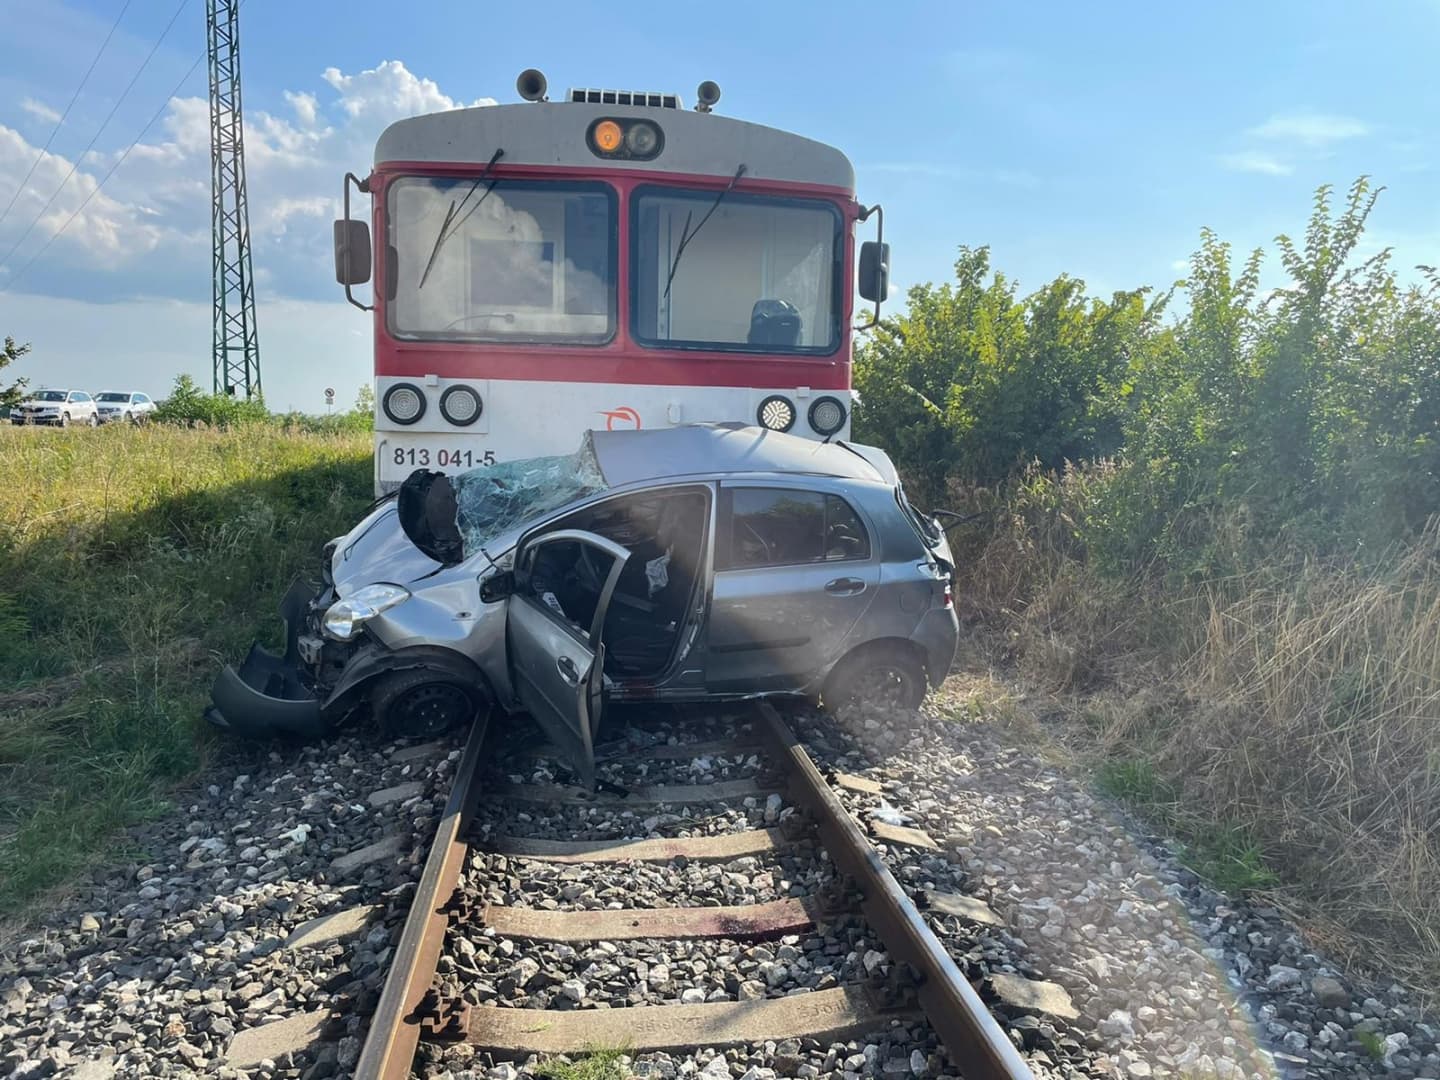 Halálos baleset: Személyautóval ütközött egy vonat, a sofőr és kutyája is életét vesztette